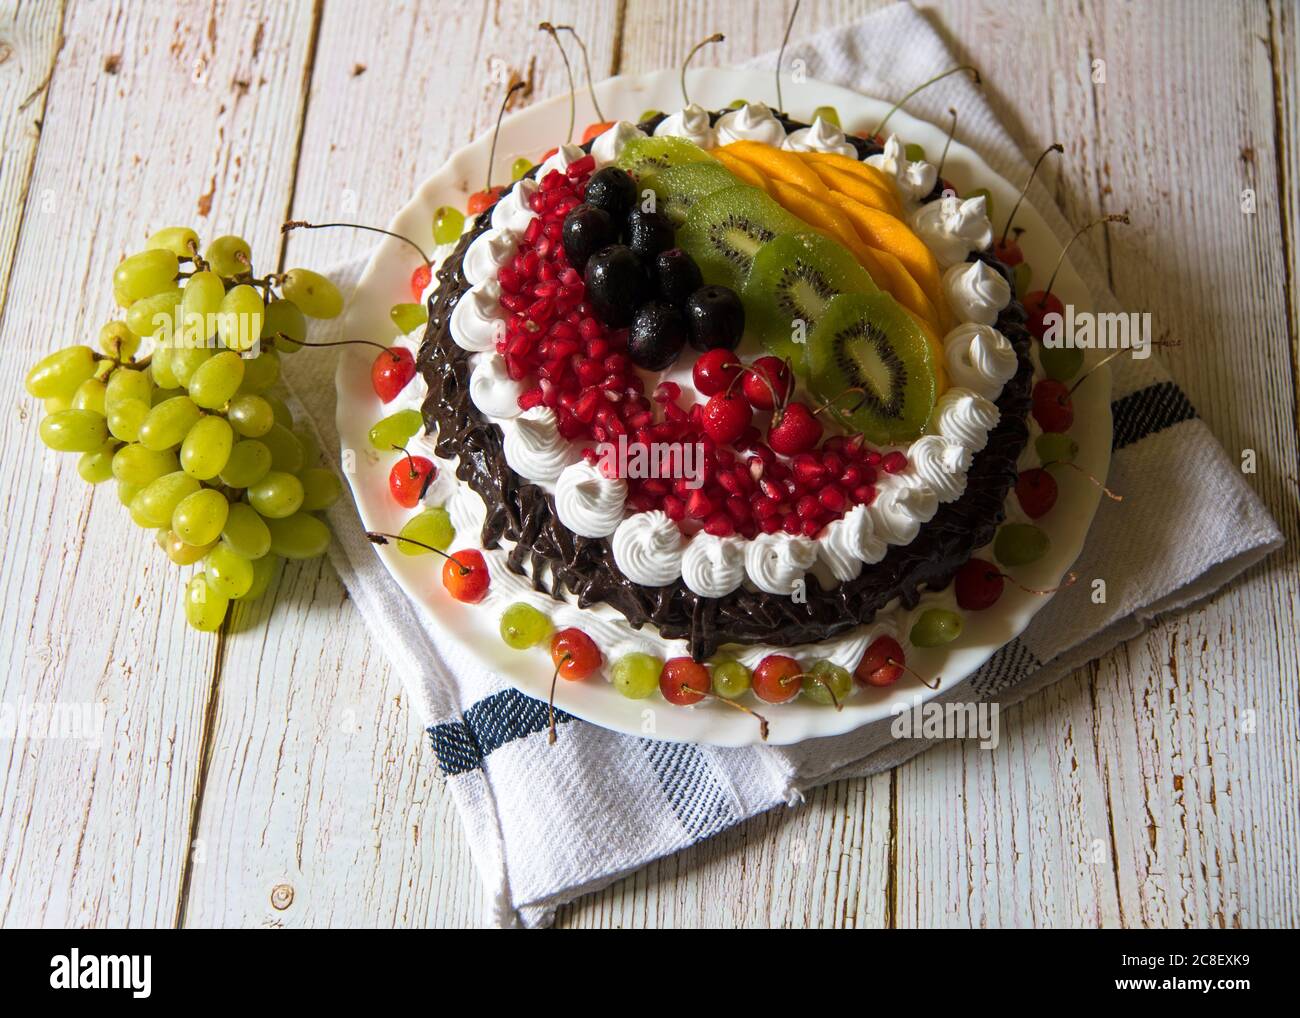 Obst und Desserts auf einem Hintergrund als Delikatesse dienen Stockfoto